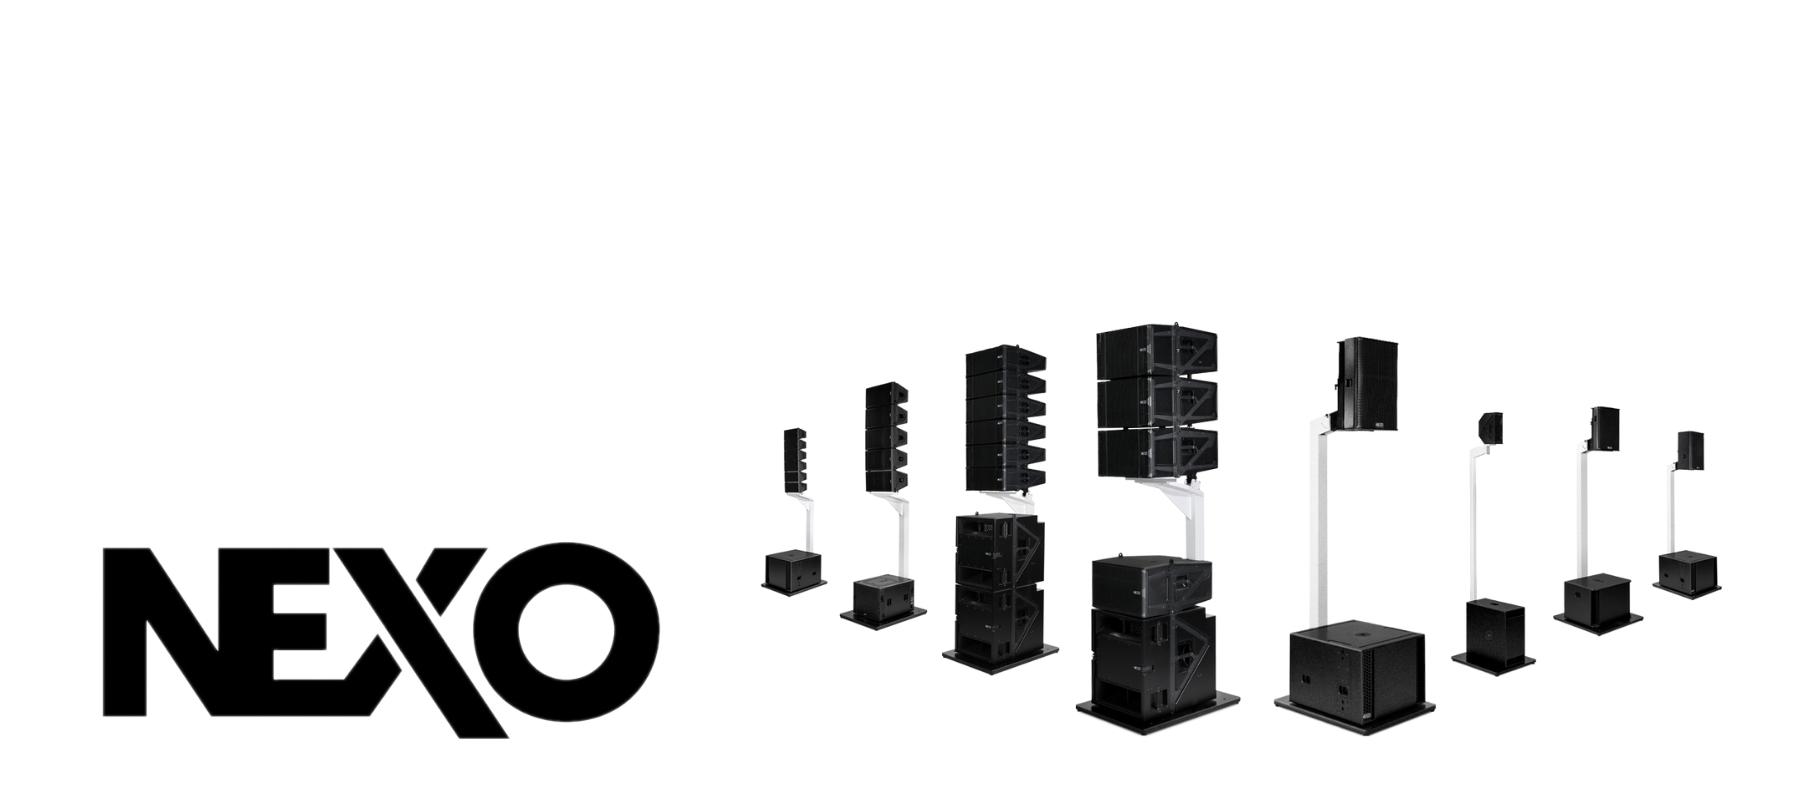 Nexo speakers - Media Service België